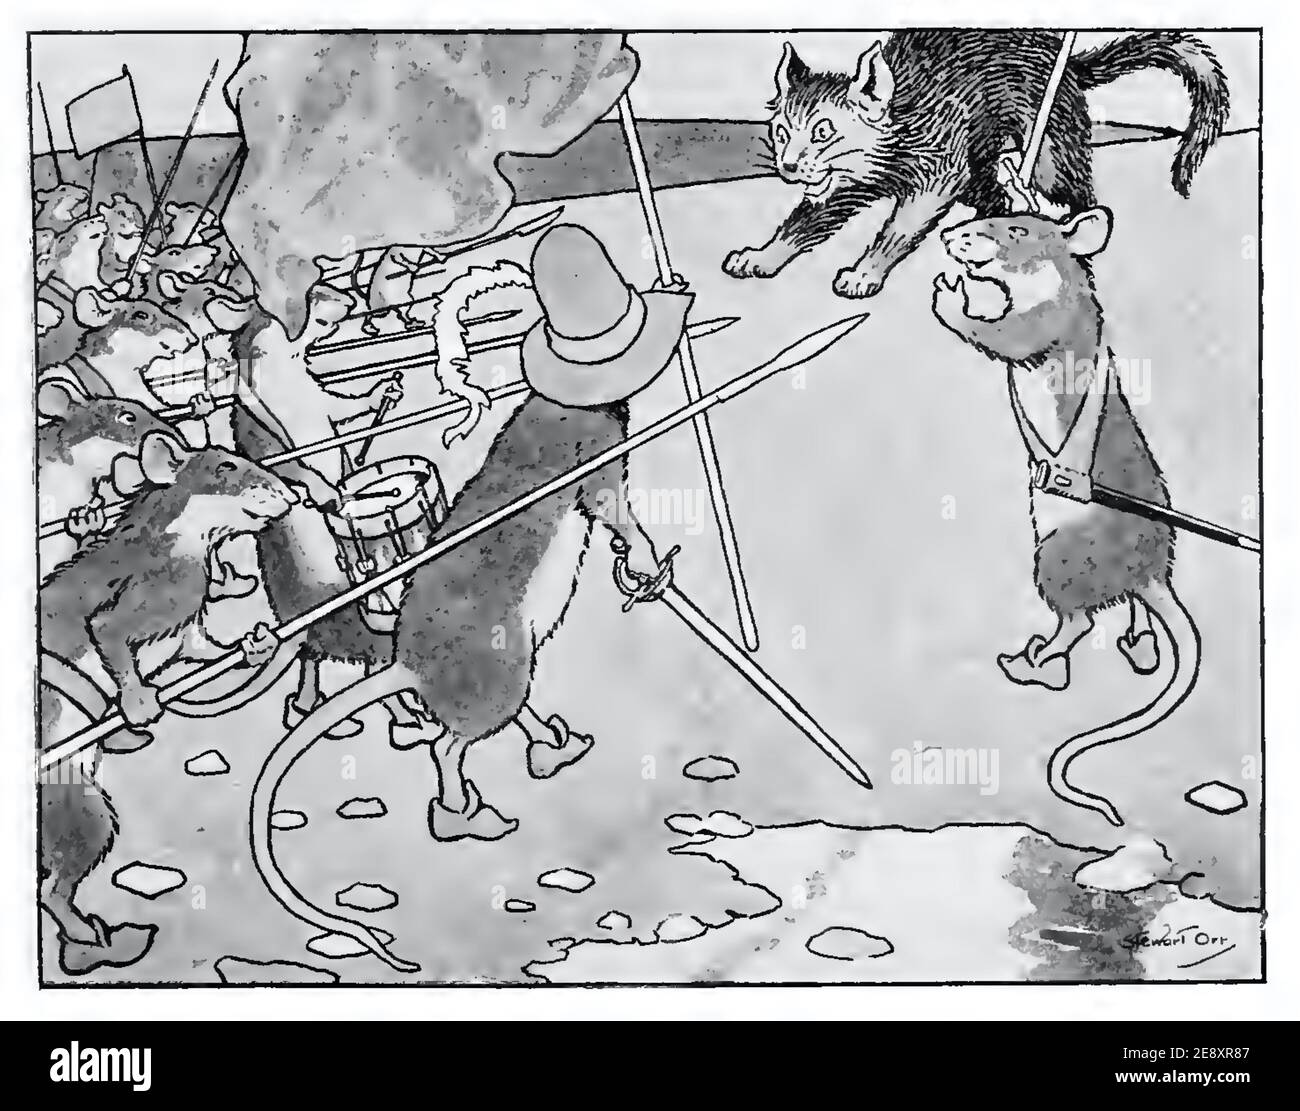 Stewart Orr caricature montrant une bande de souris avec des brochets en confrontation avec un chat. Malheureusement, le résultat final est trop graphique pour apparaître ici. Banque D'Images